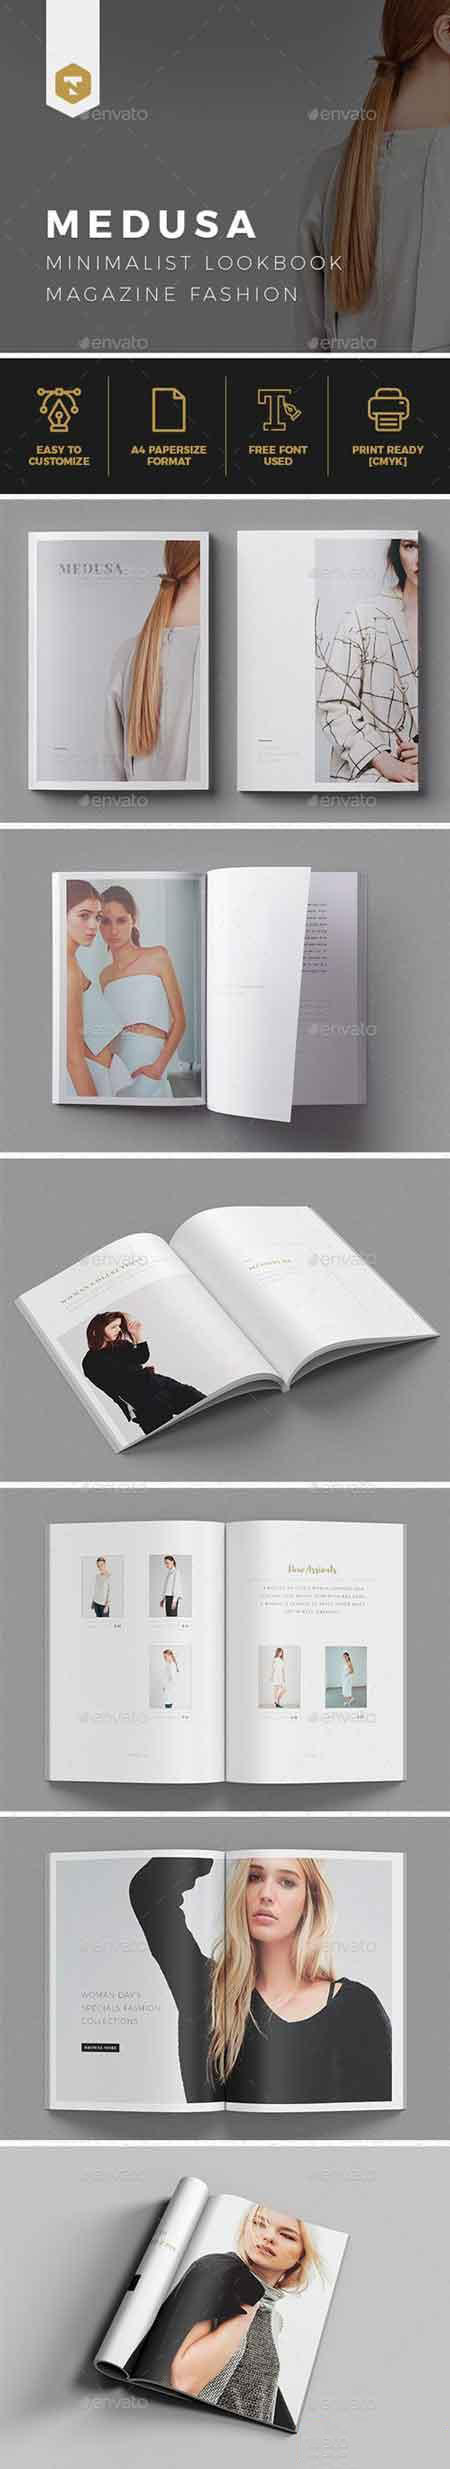 时尚的时装杂志模板下载[indd]–MEDUSA Lookbook Magazine Fashion插图